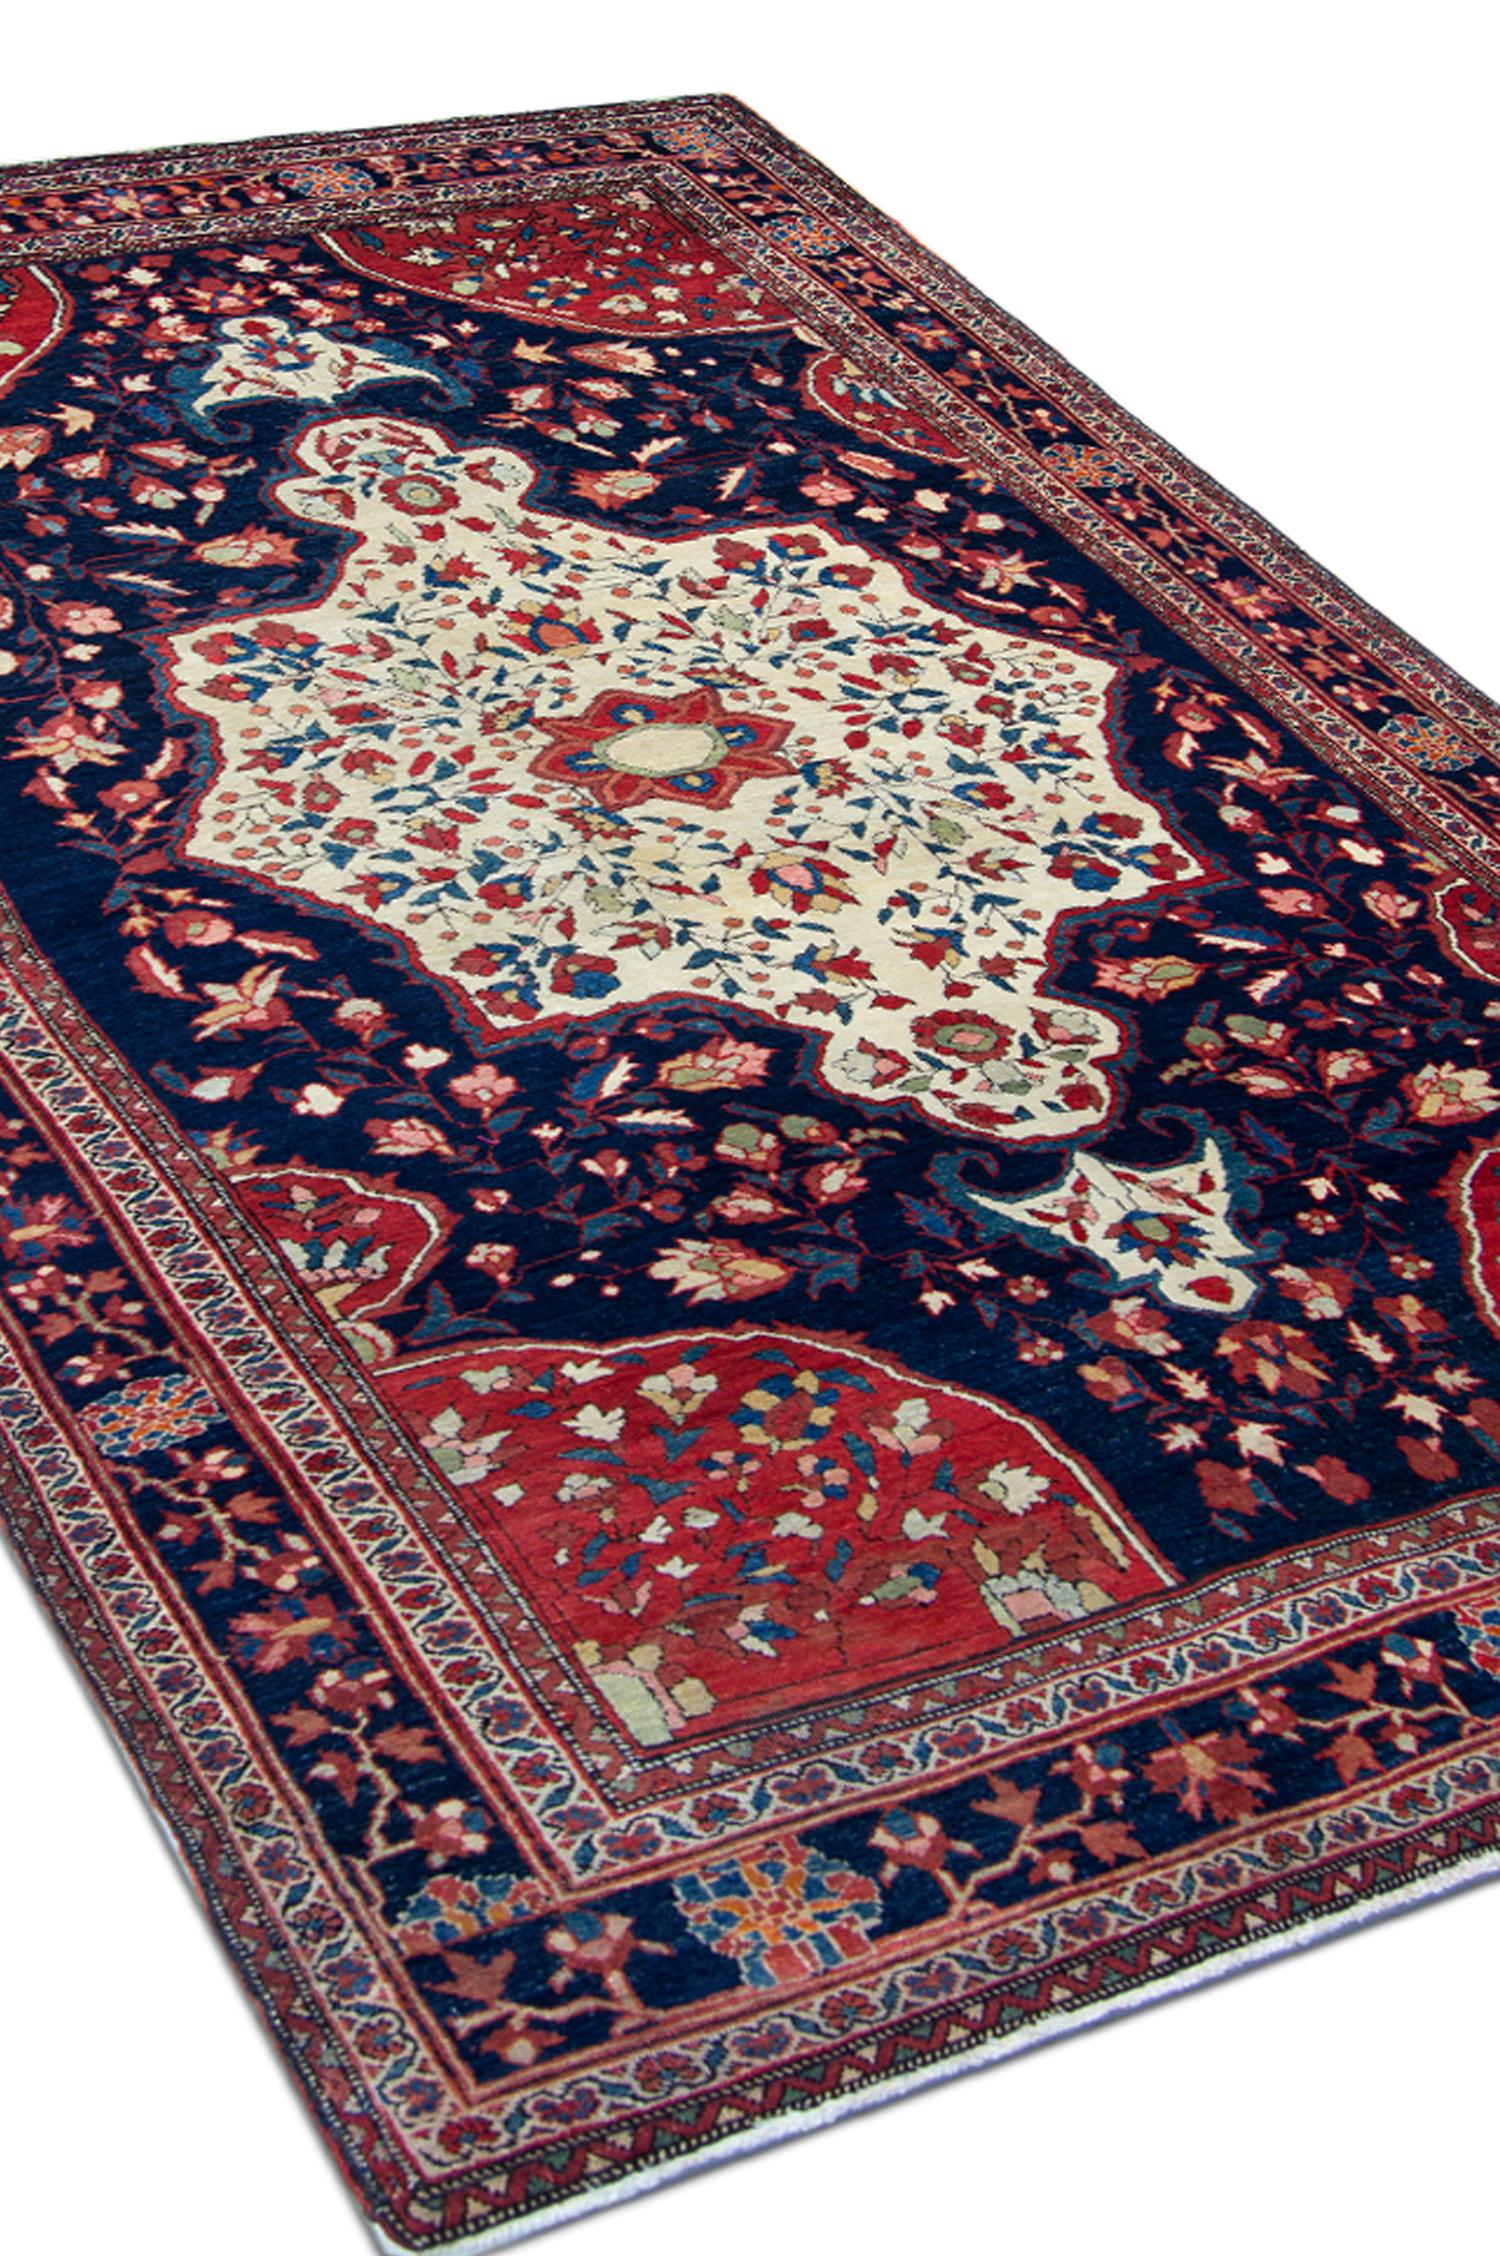 Exklusive ntique Bereich Teppich wurde in den 1880er Jahren mit nur den feinsten Materialien gewebt. Es hat einen tiefblauen Hintergrund und ein charmantes rot-cremefarbenes Medaillon in der Mitte, das ein typisches traditionelles Design darstellt.